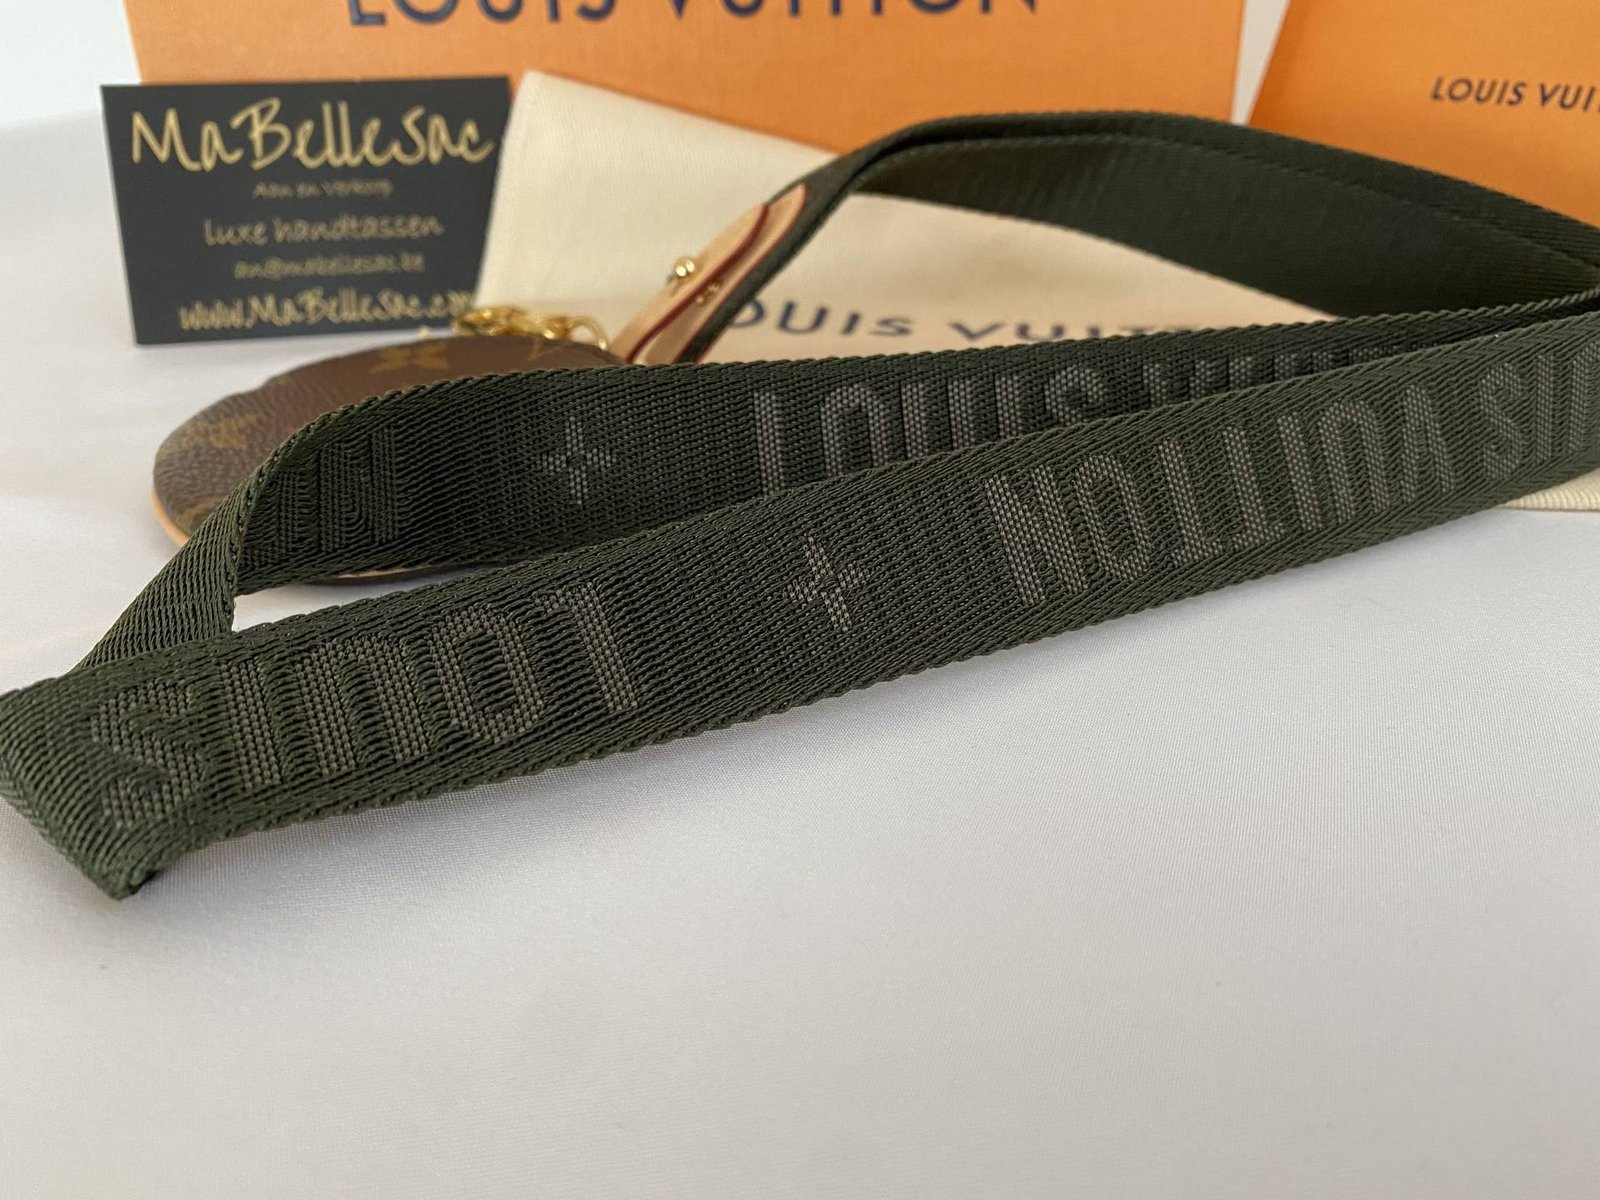 Louis Vuitton lanyard key holder - MaBelleSac